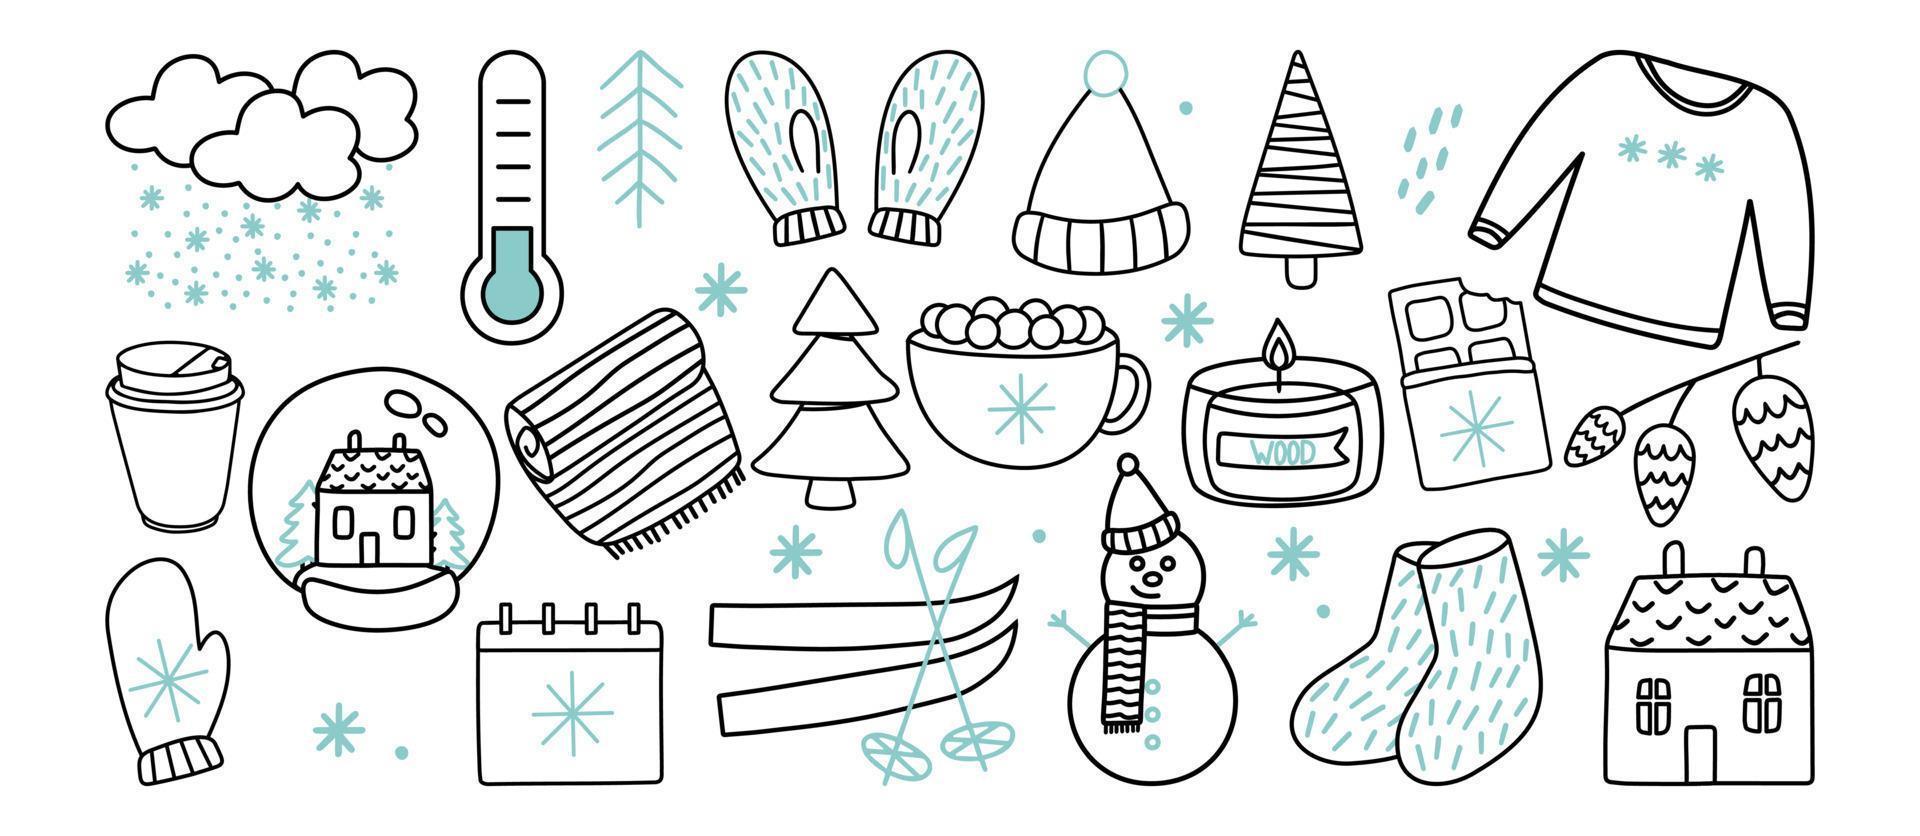 conjunto de garabatos temáticos de la temporada de invierno: copos de nieve, joyas clásicas, prendas de punto, deportes de invierno. dibujos vectoriales de mano libre aislados en un fondo blanco. vector